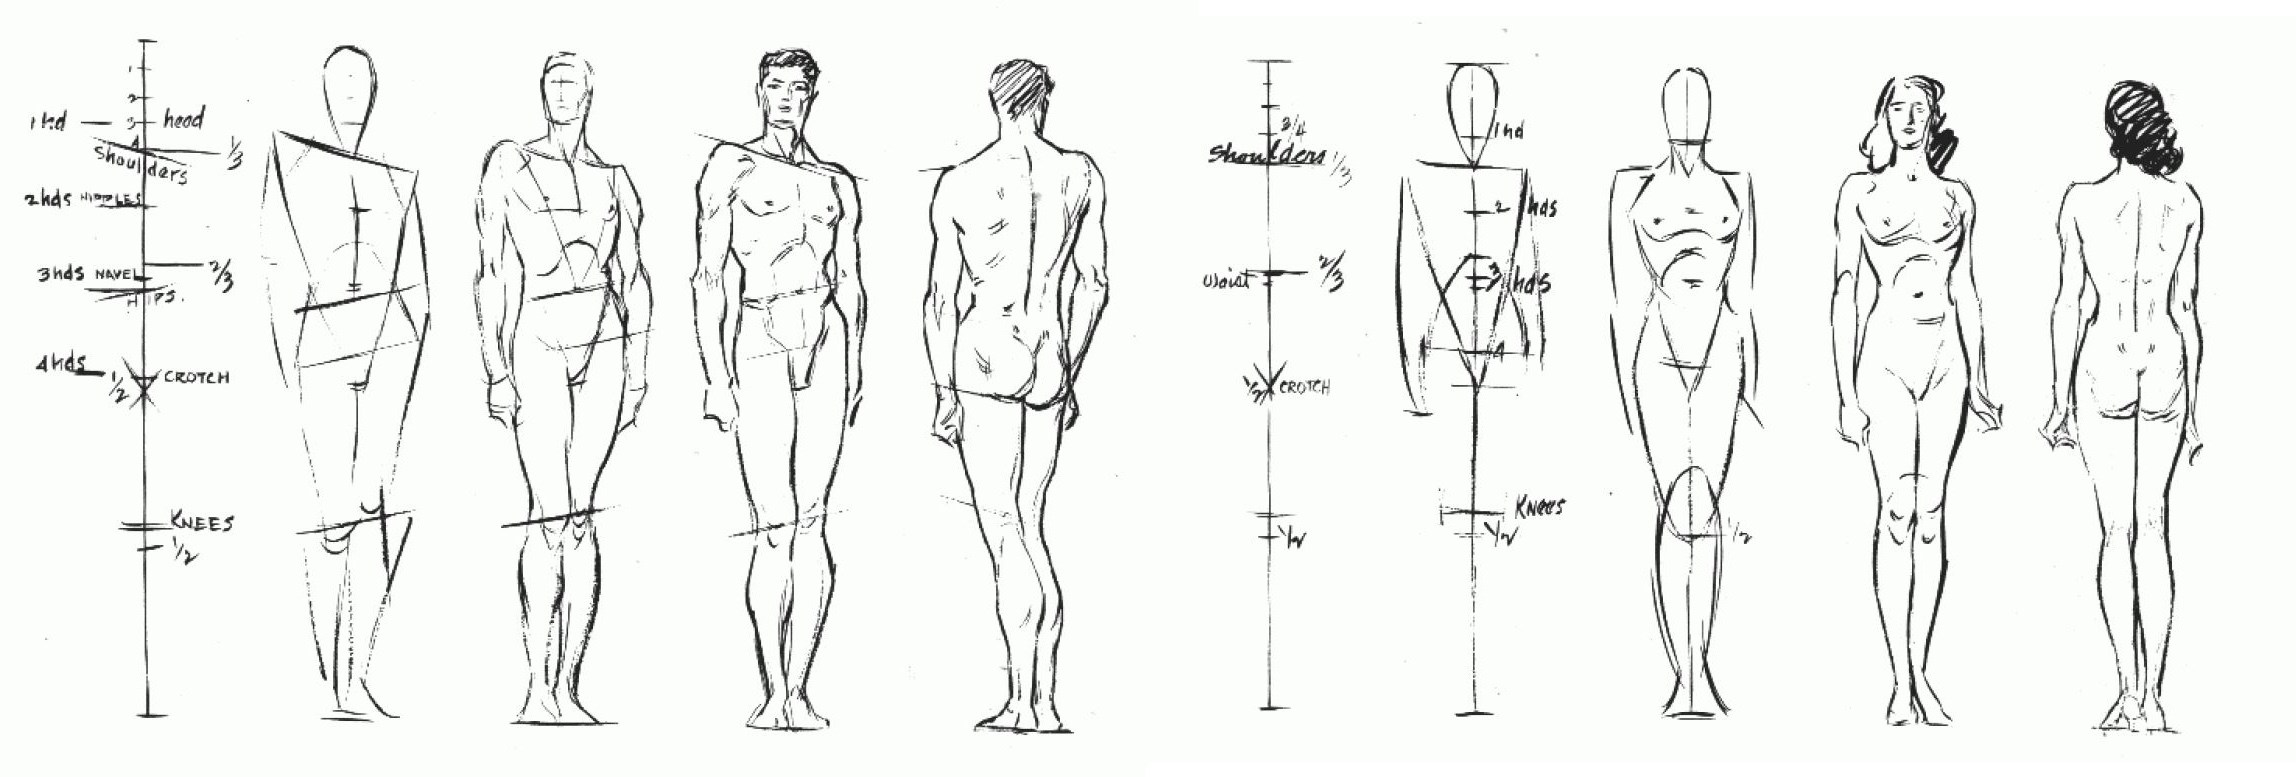 Human Figure Drawing Book Pdf Free Download - radpdf